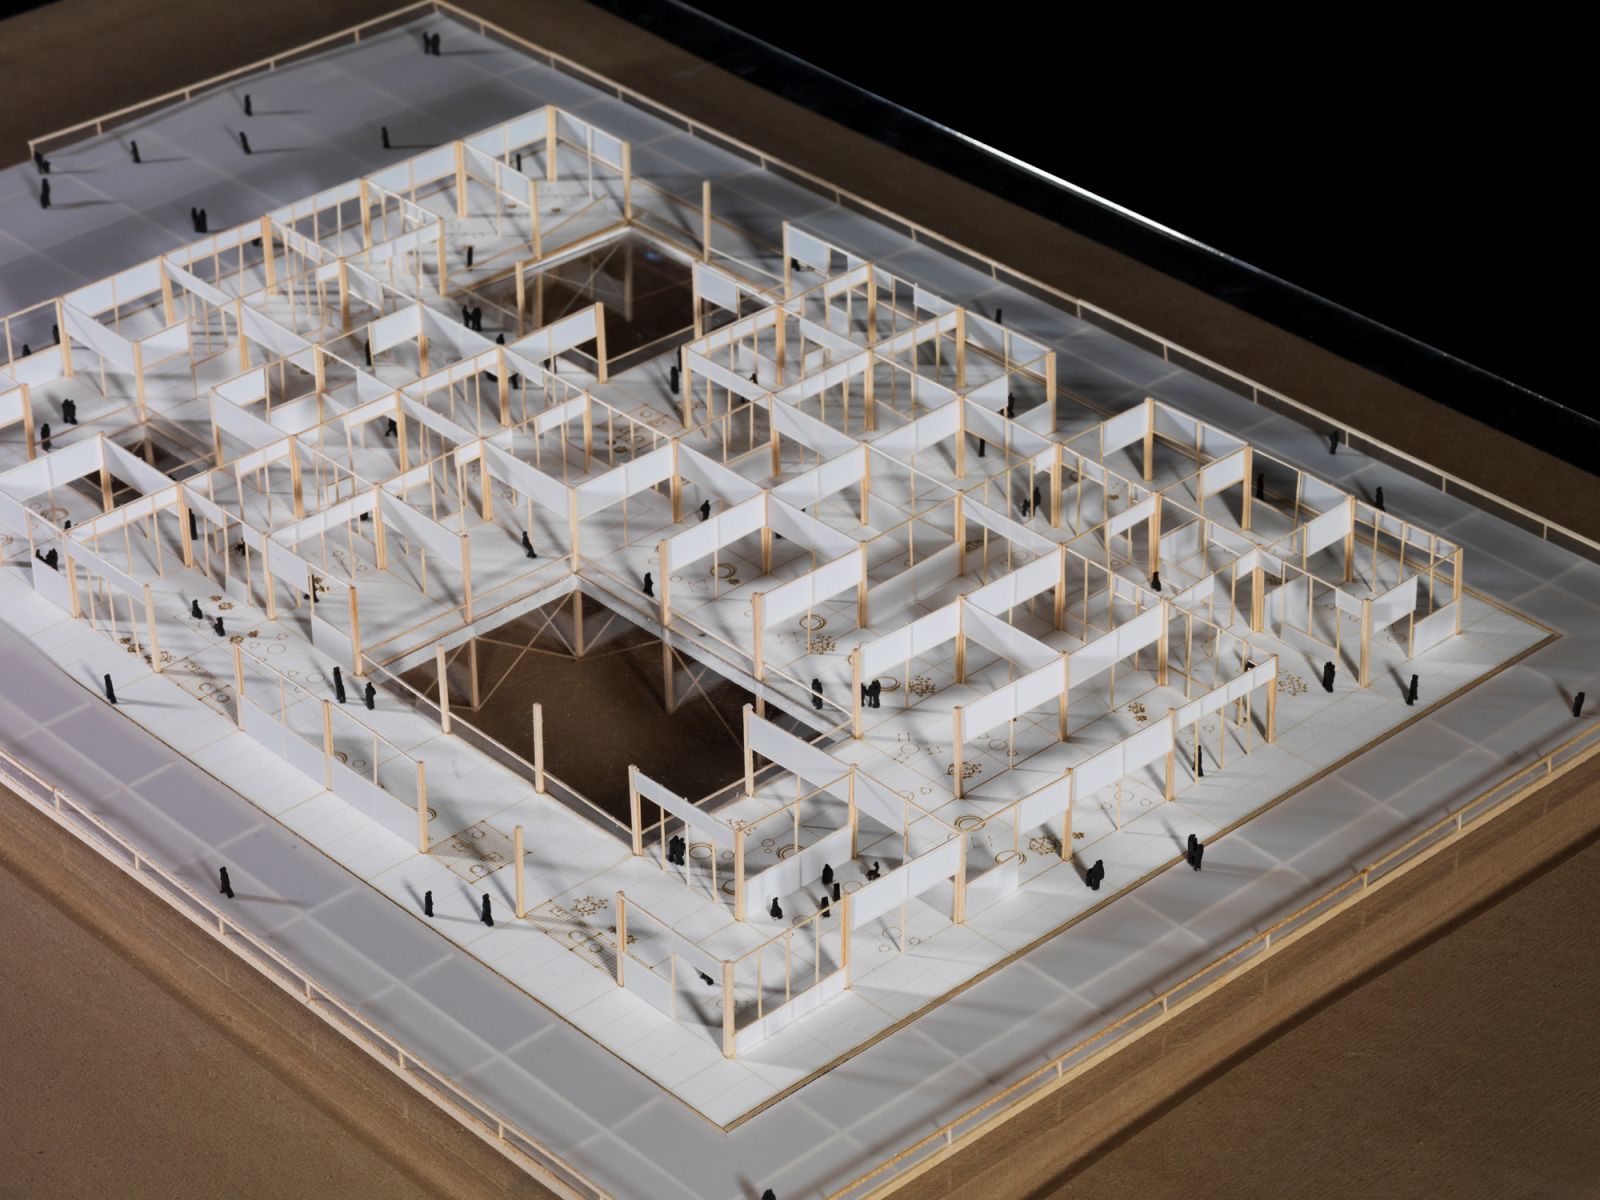 گالری عکس 5 طرح پیشنهادی MIT i2 از Suk Lee  عکس طراحی شهری عکس فضا در معماری عکس مجموعه فرهنگی عکس معماری آمریکا عکس معماری شهری